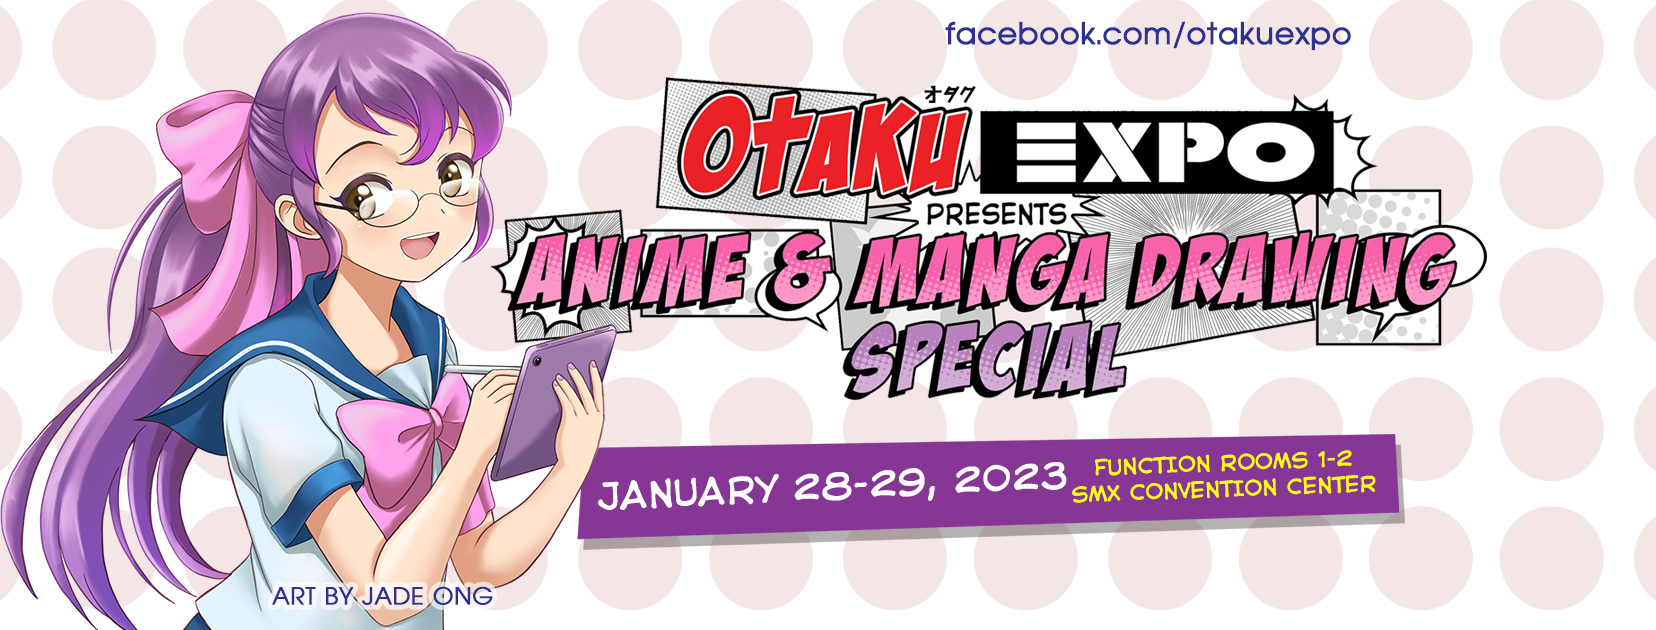 Events January 2023 - Otaku Expo